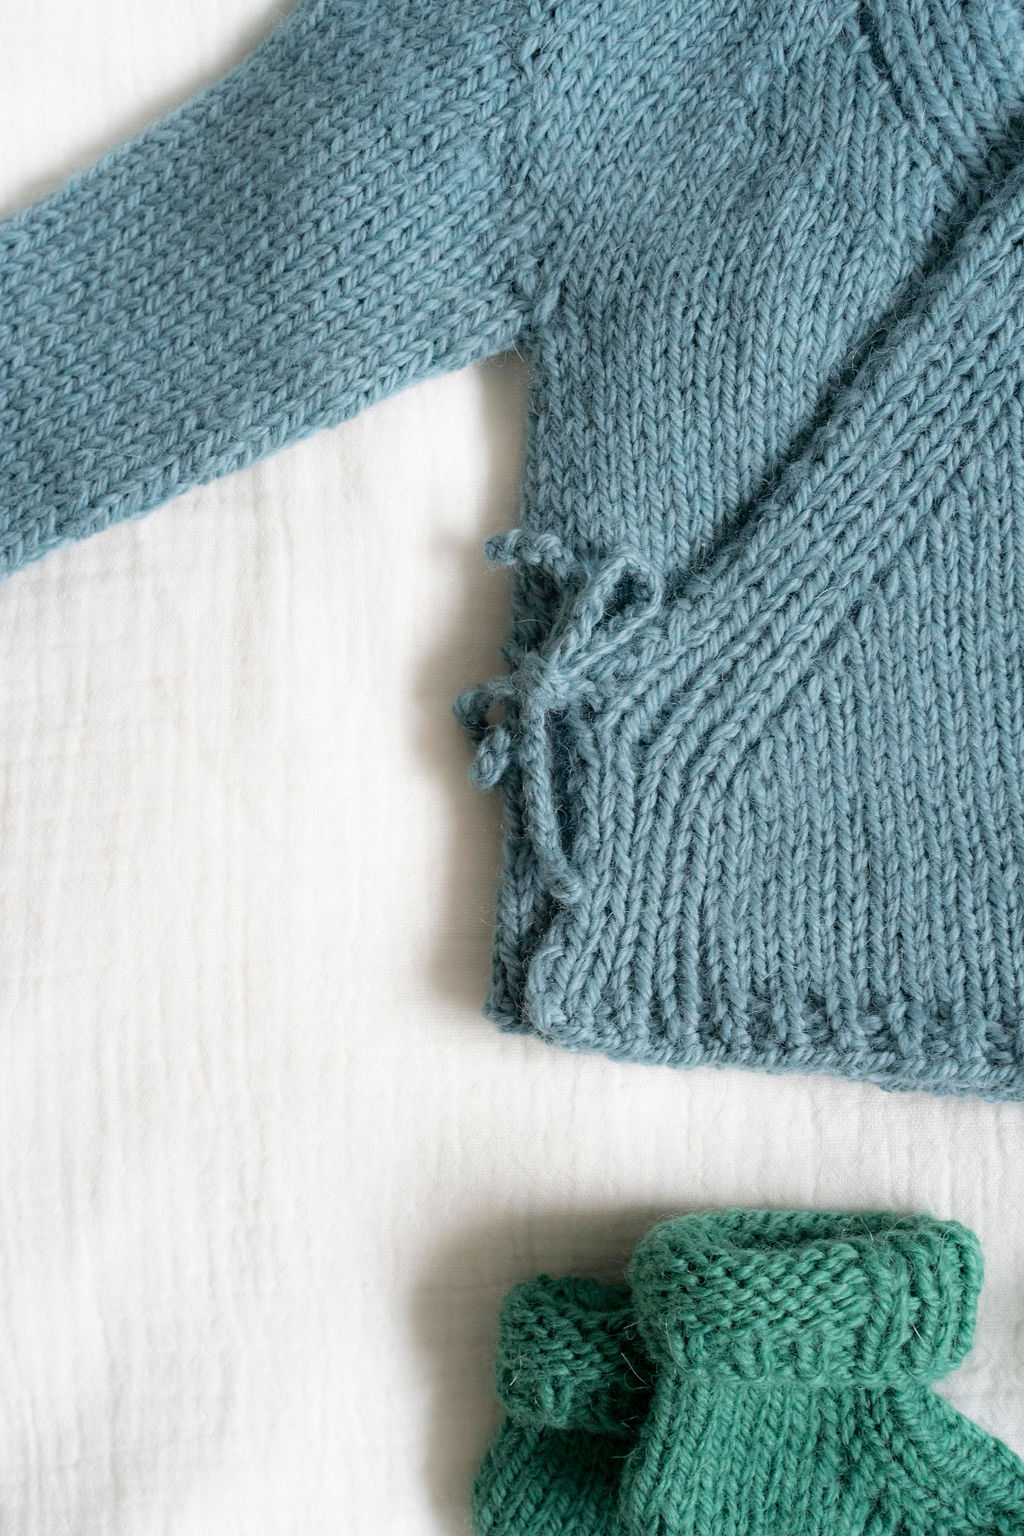 Brassière bébé tricot : l'indispensable du trousseau de naissance